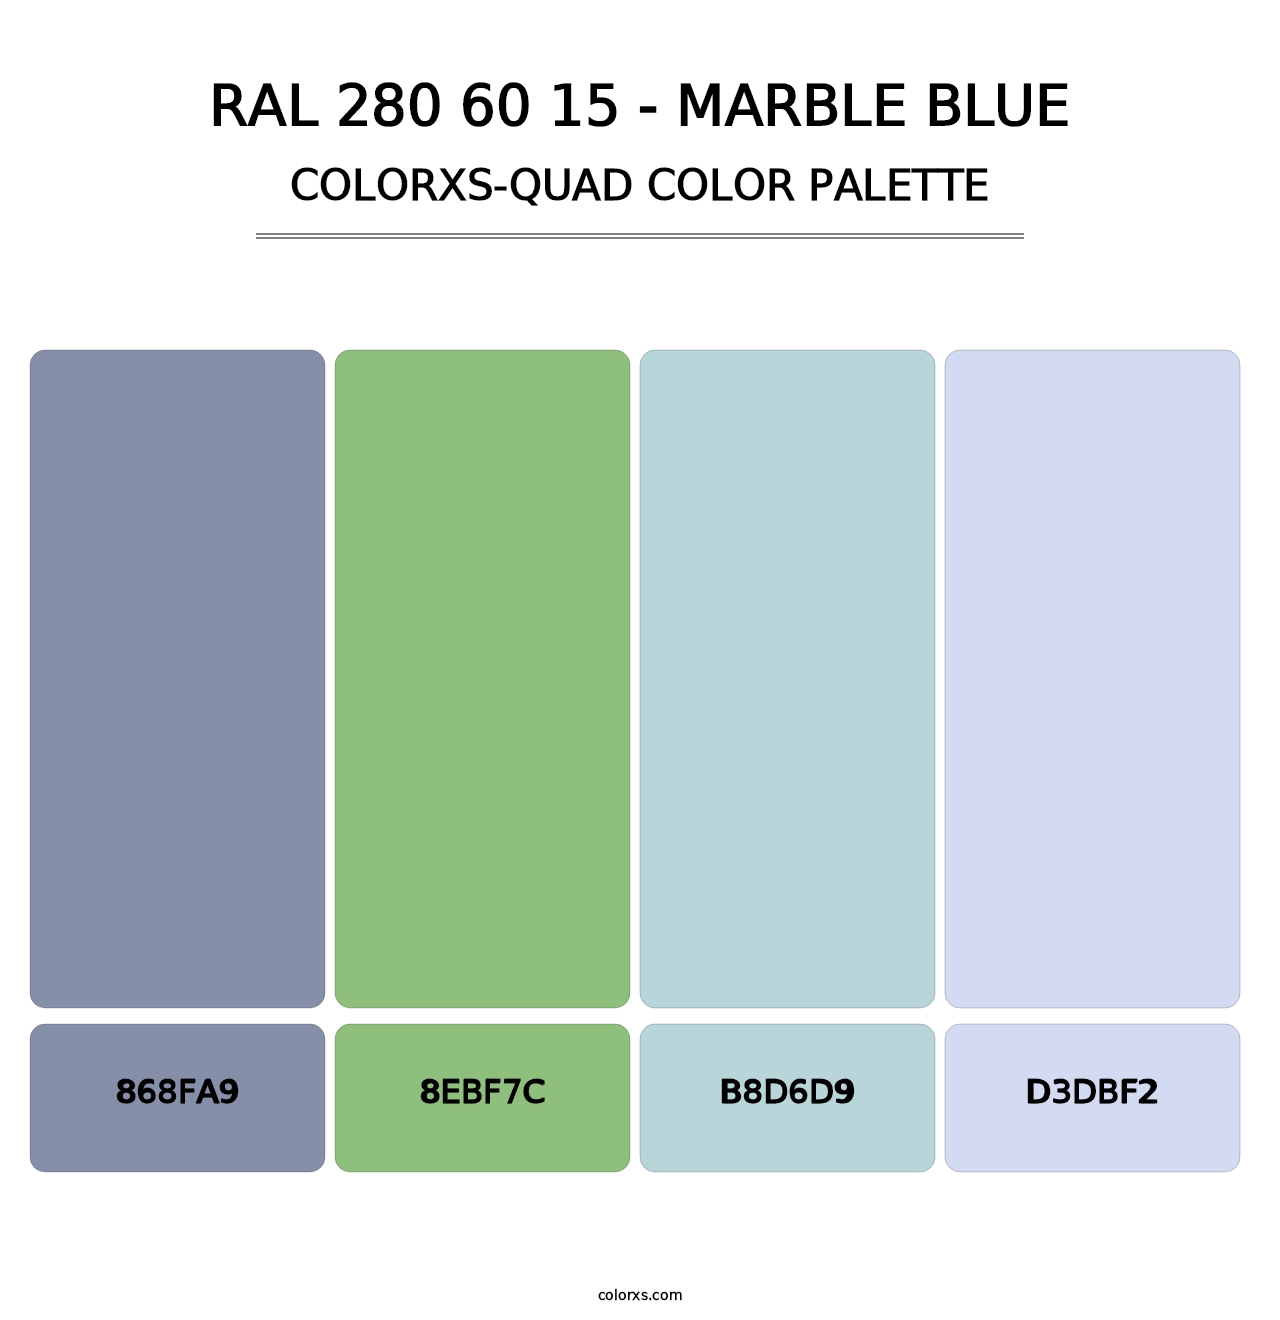 RAL 280 60 15 - Marble Blue - Colorxs Quad Palette